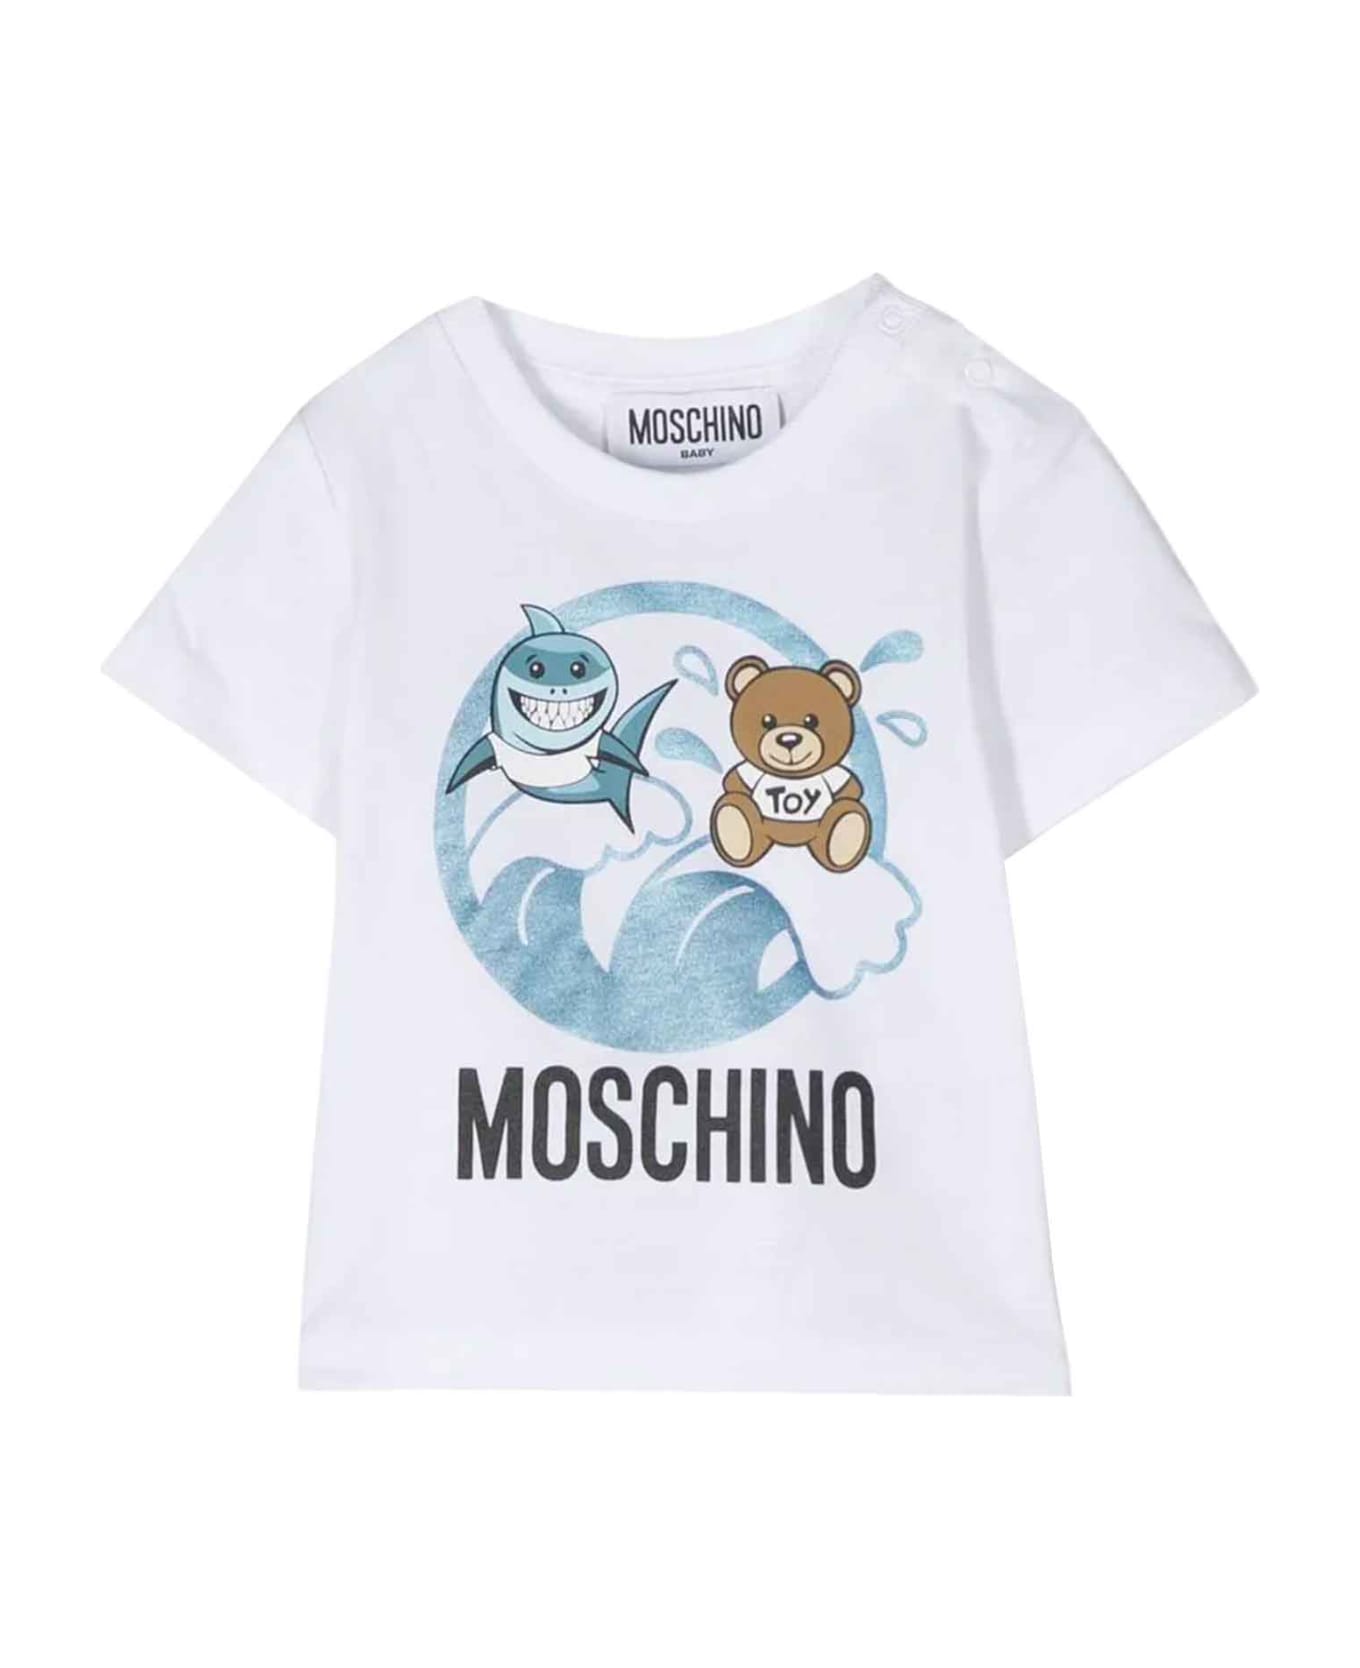 Moschino White T-shirt Baby Unisex - Bianco